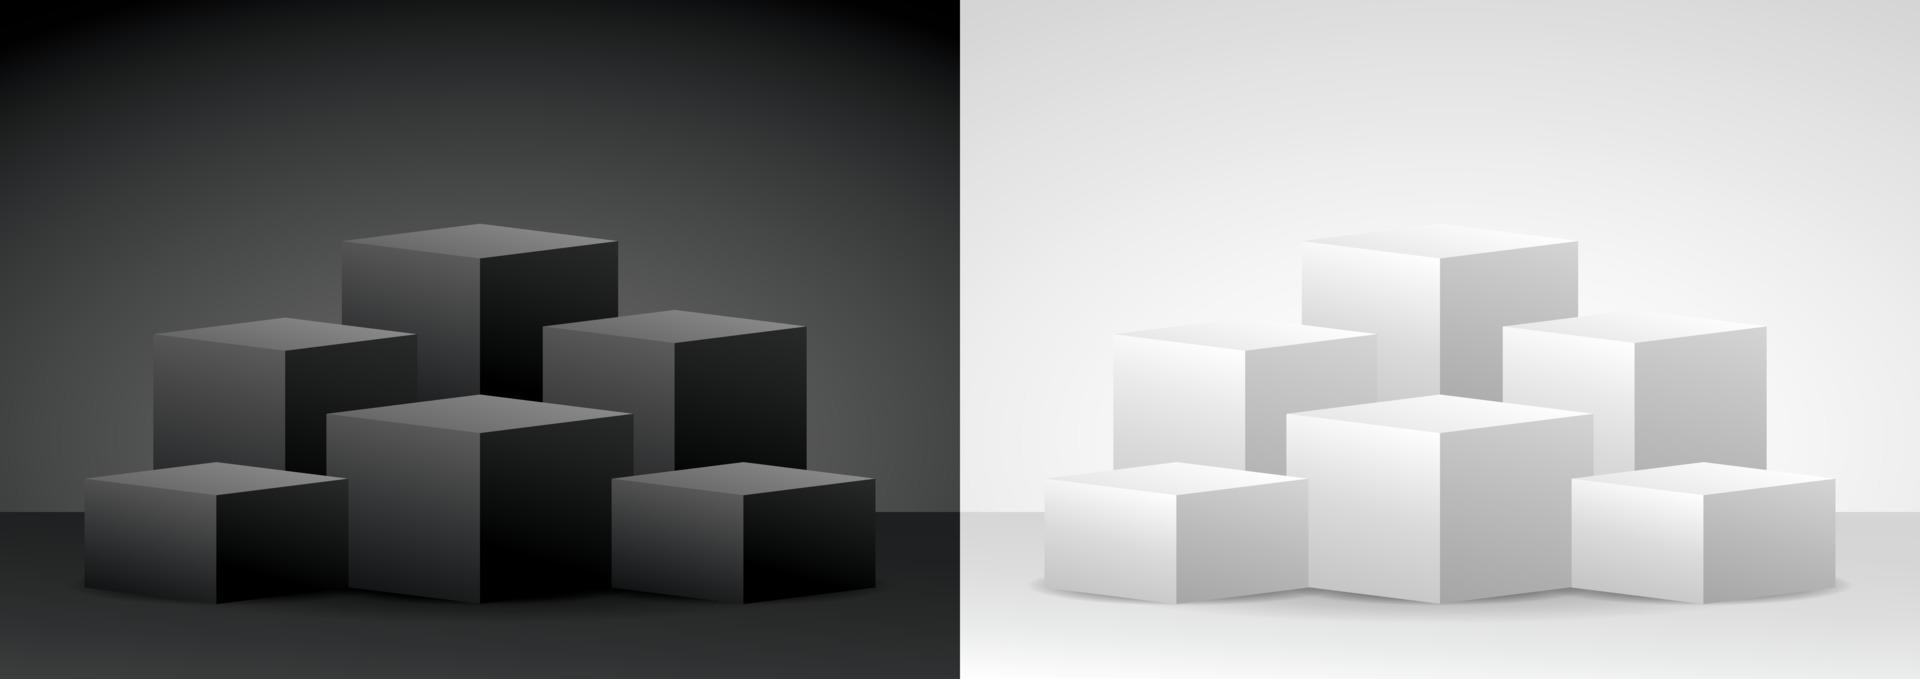 svart och vit modern minimal kvadratisk display podium set 3d illustration vektor för att sätta ditt objekt